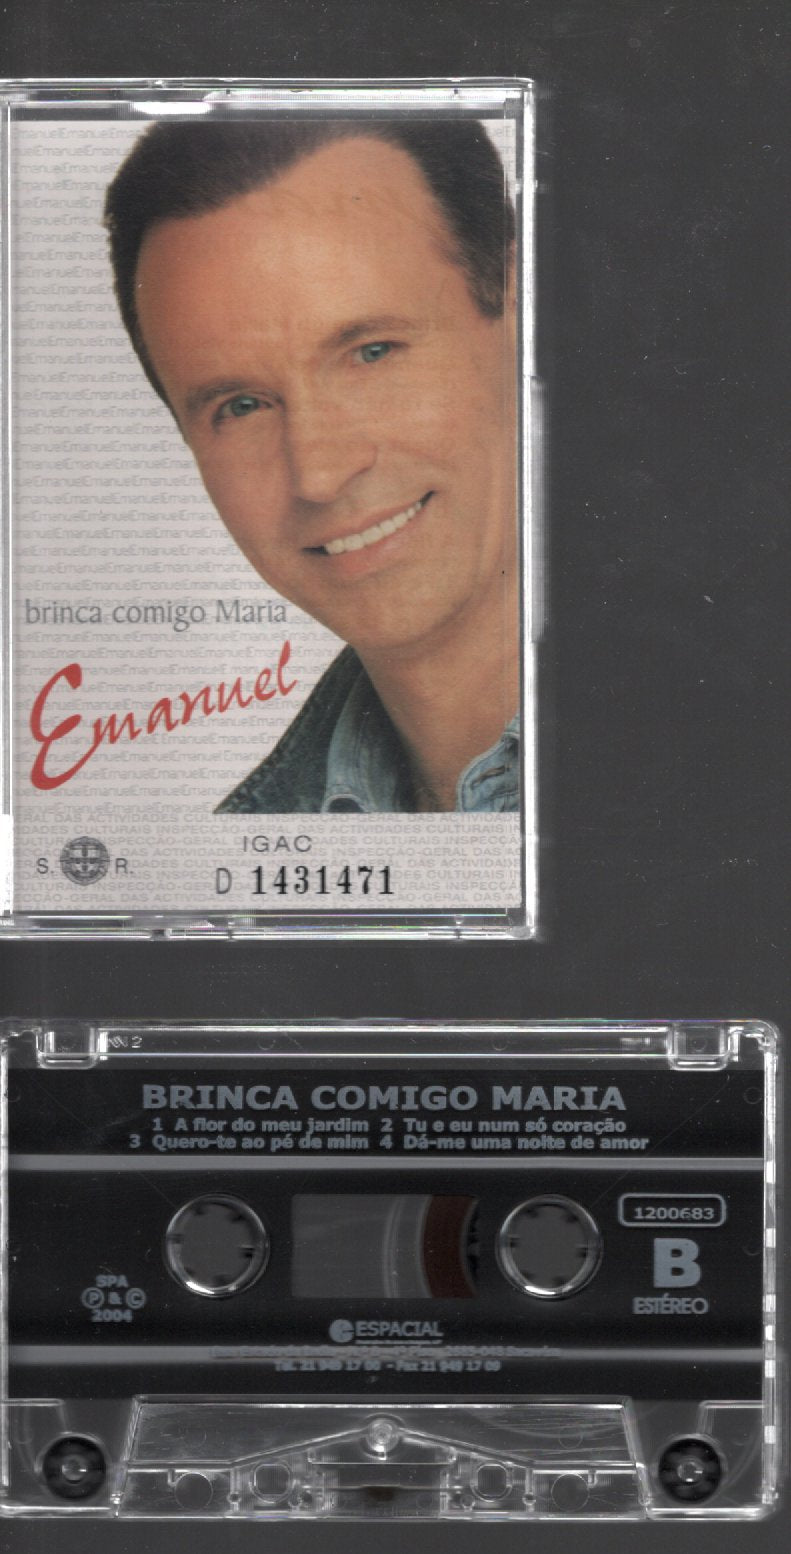 CASSETE EMANUEL BRINCA COMIGO MARIA